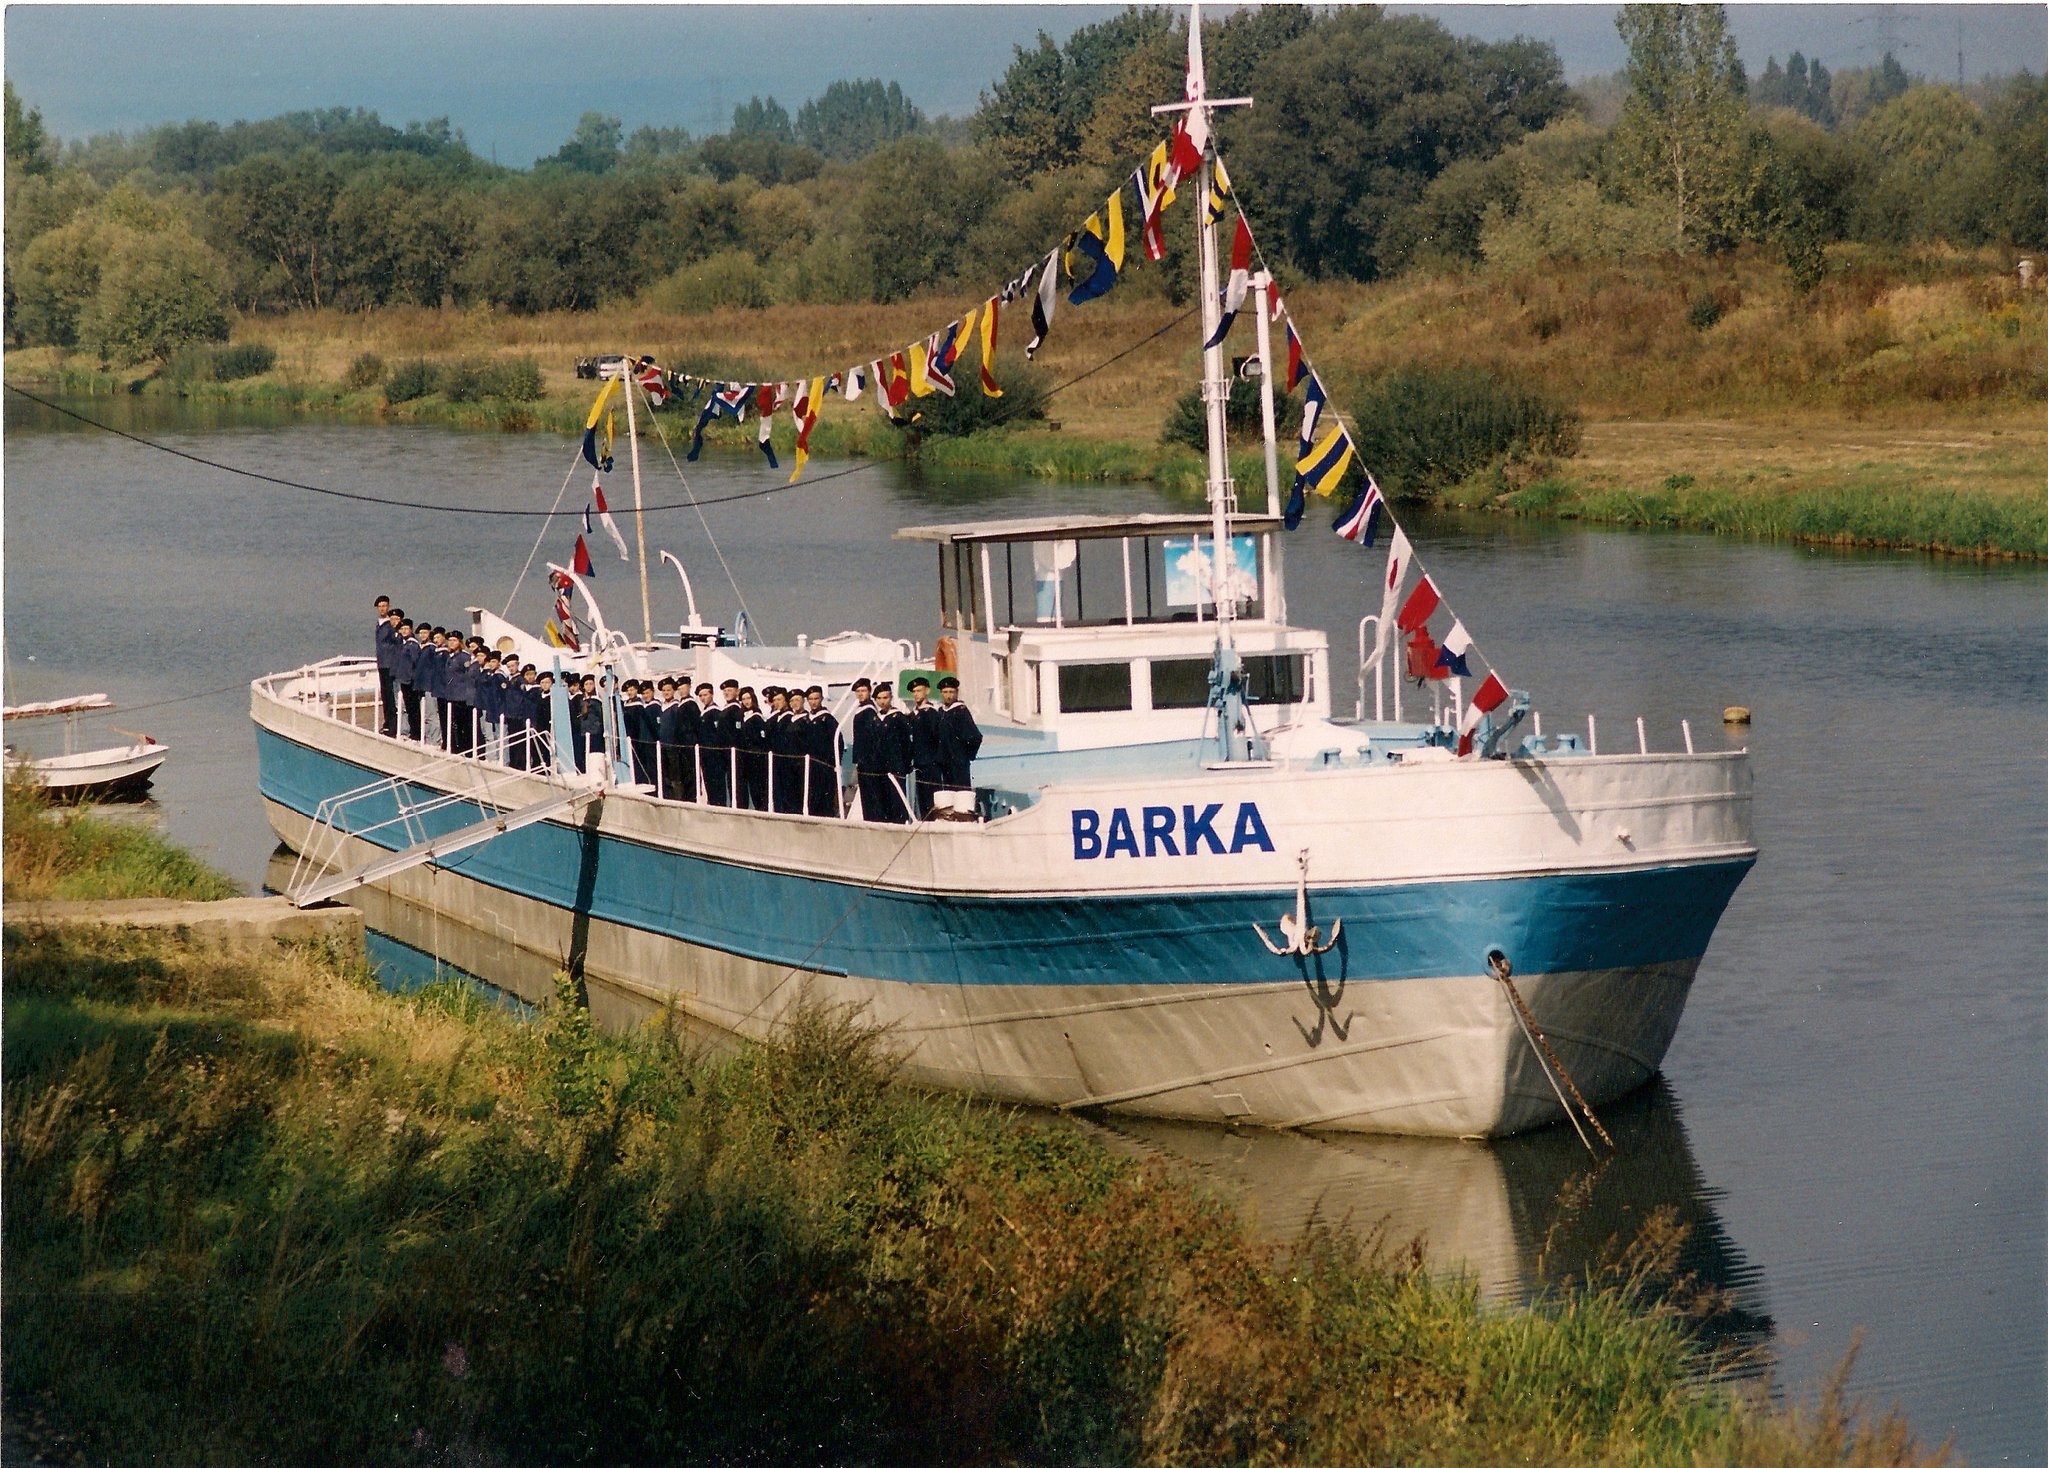 'Barka' [źródło zdjęcia: https://www.41hdz.opole.pl/druzyna/historia/historia-barki.html]